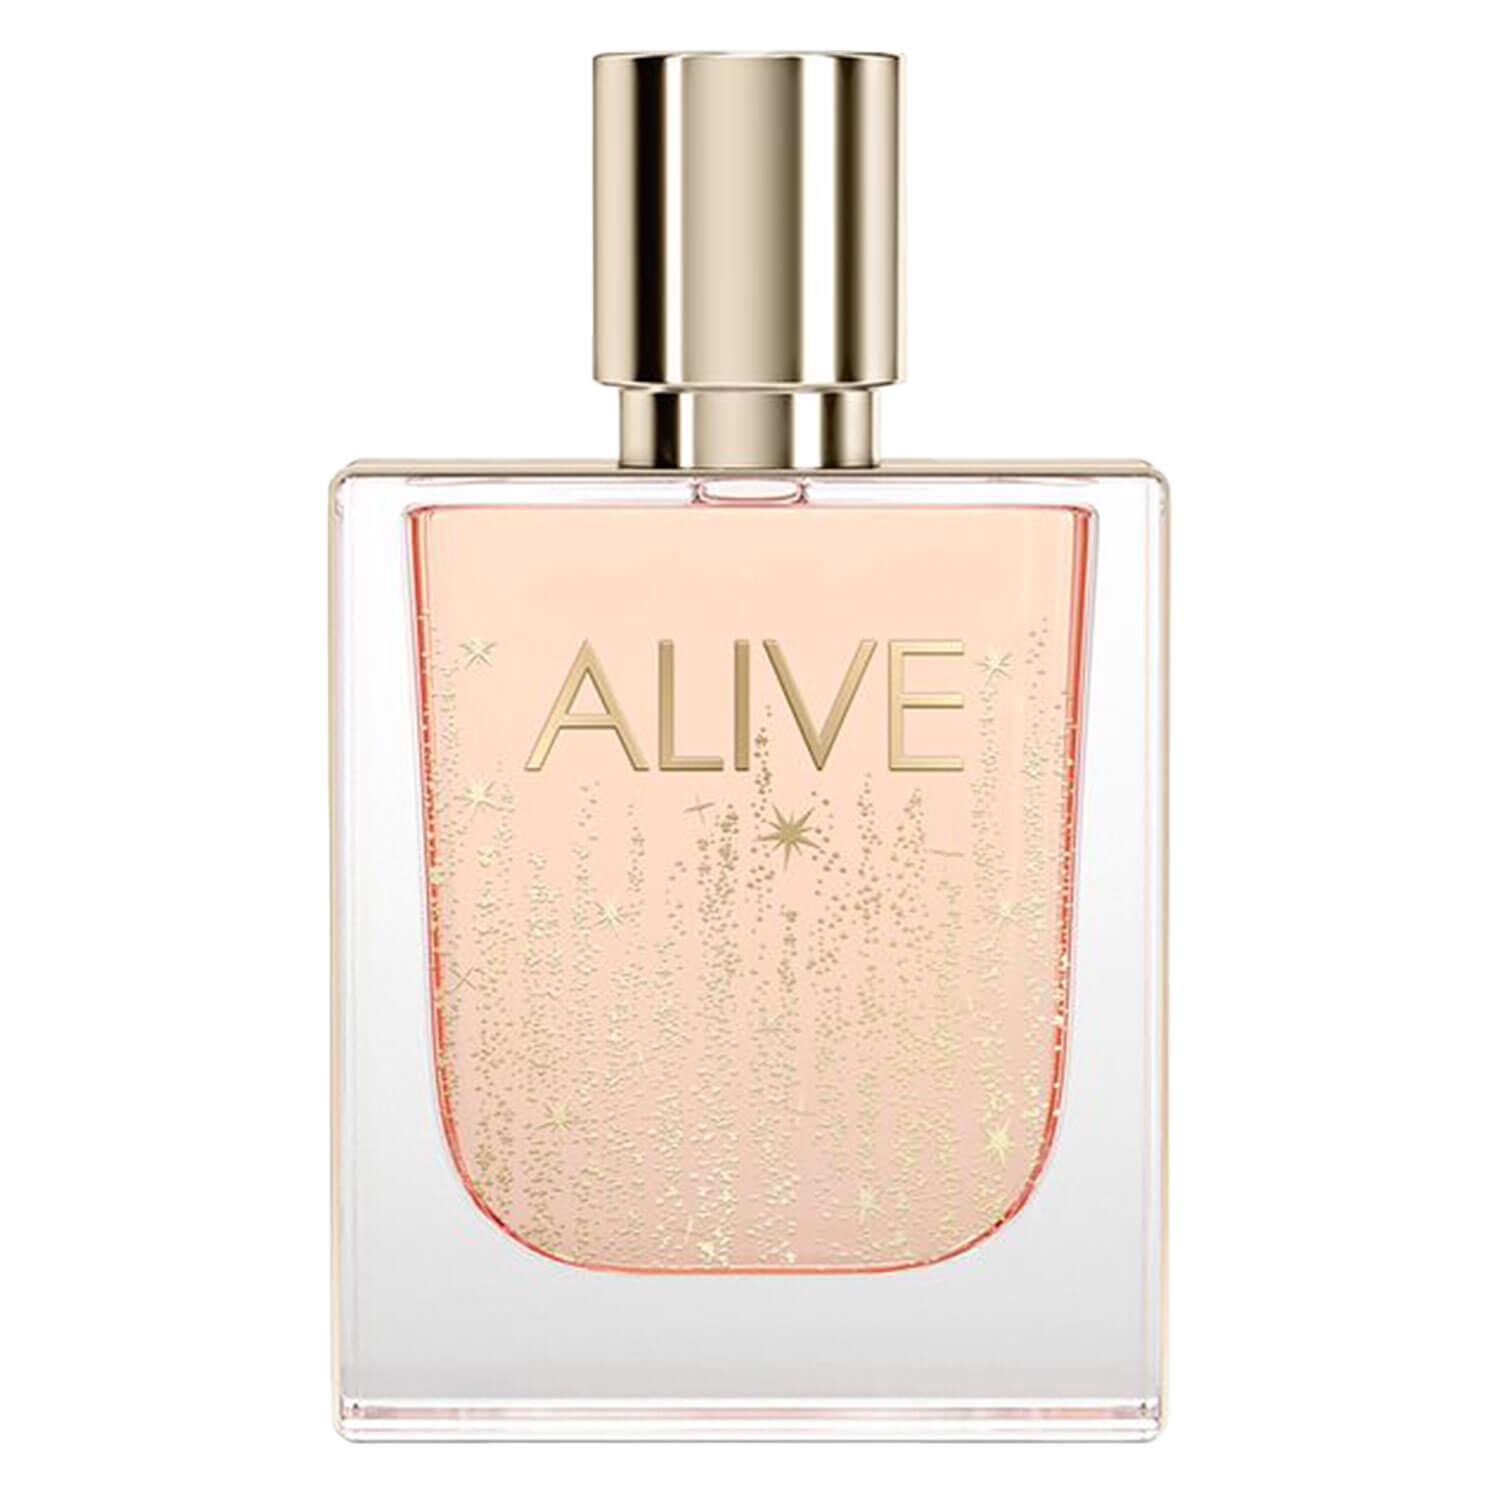 Produktbild von Boss Alive - Eau de Parfum Collector`s Edition